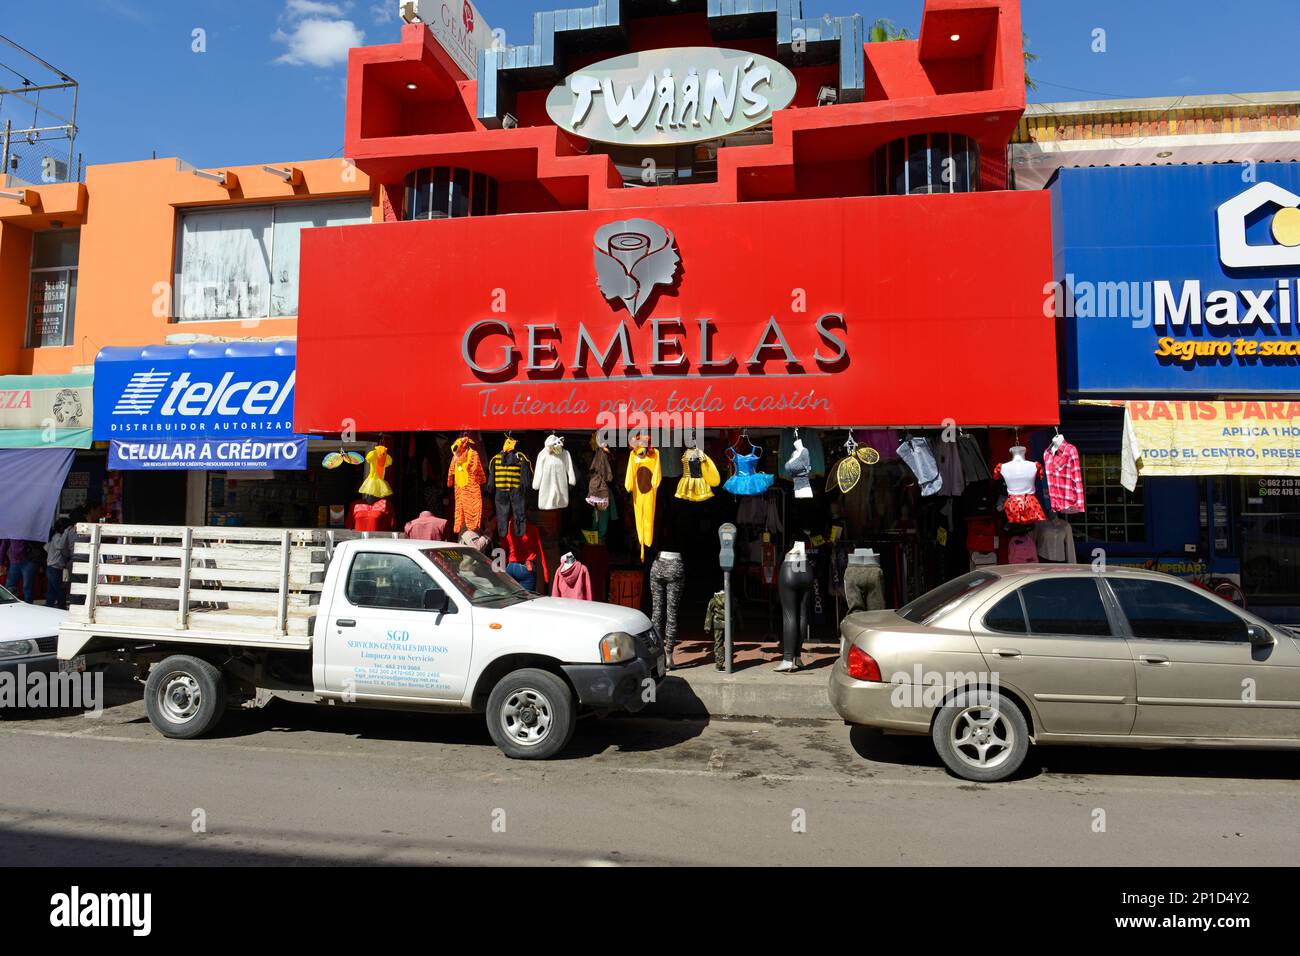 Magasin Gemelas dans le quartier commerçant de Hermosillo, Mexique Banque D'Images